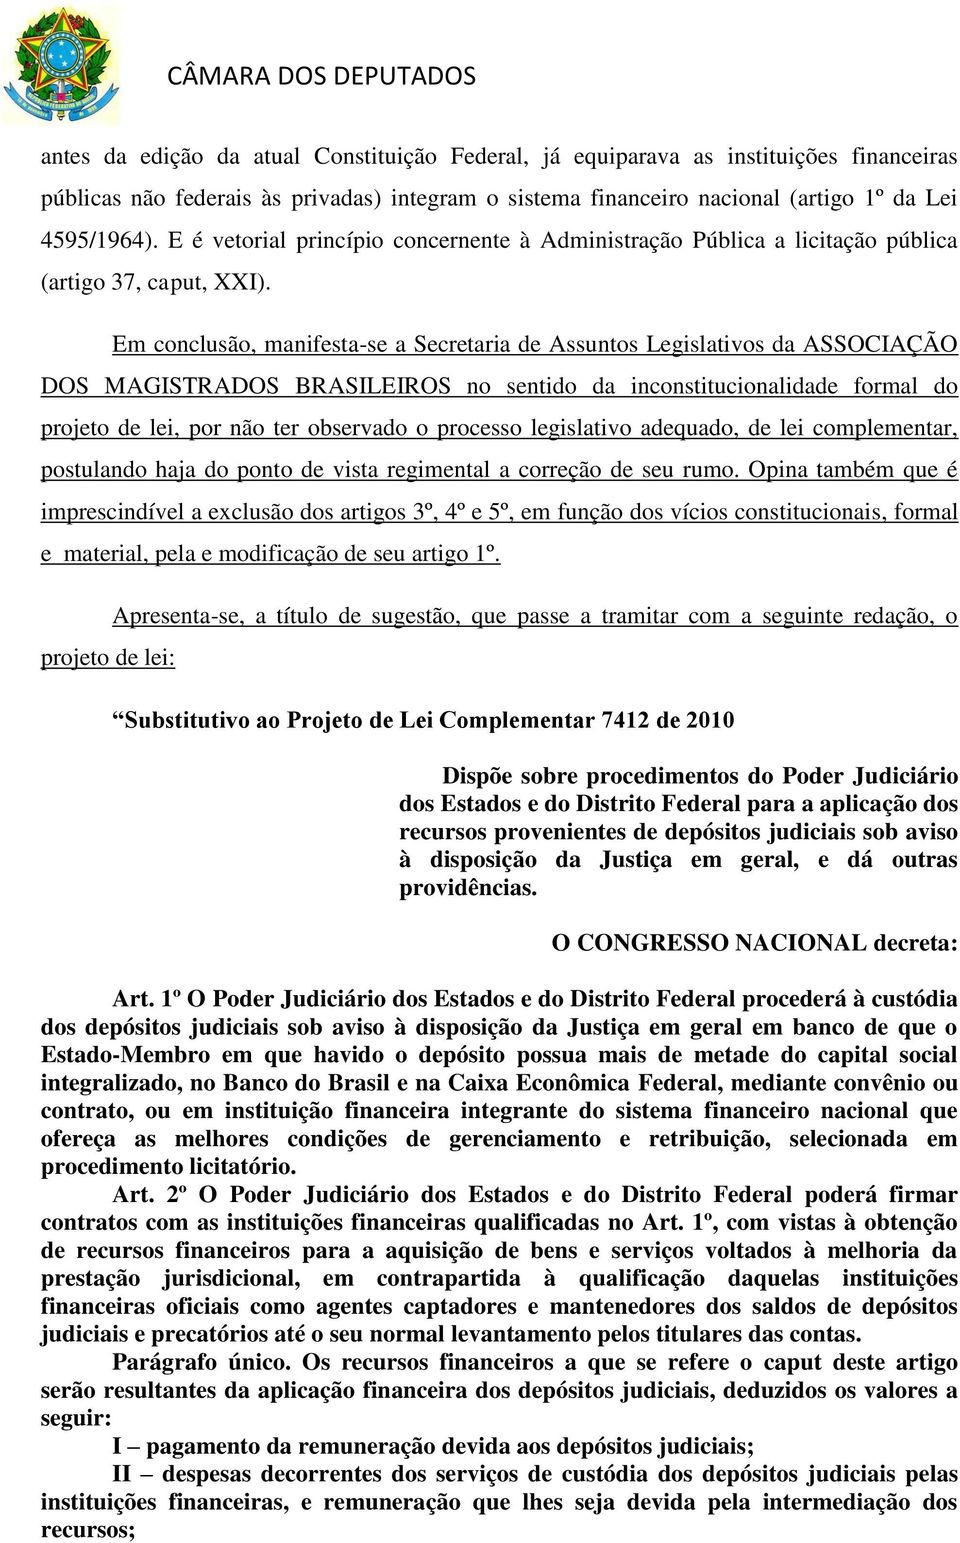 Em conclusão, manifesta-se a Secretaria de Assuntos Legislativos da ASSOCIAÇÃO DOS MAGISTRADOS BRASILEIROS no sentido da inconstitucionalidade formal do projeto de lei, por não ter observado o